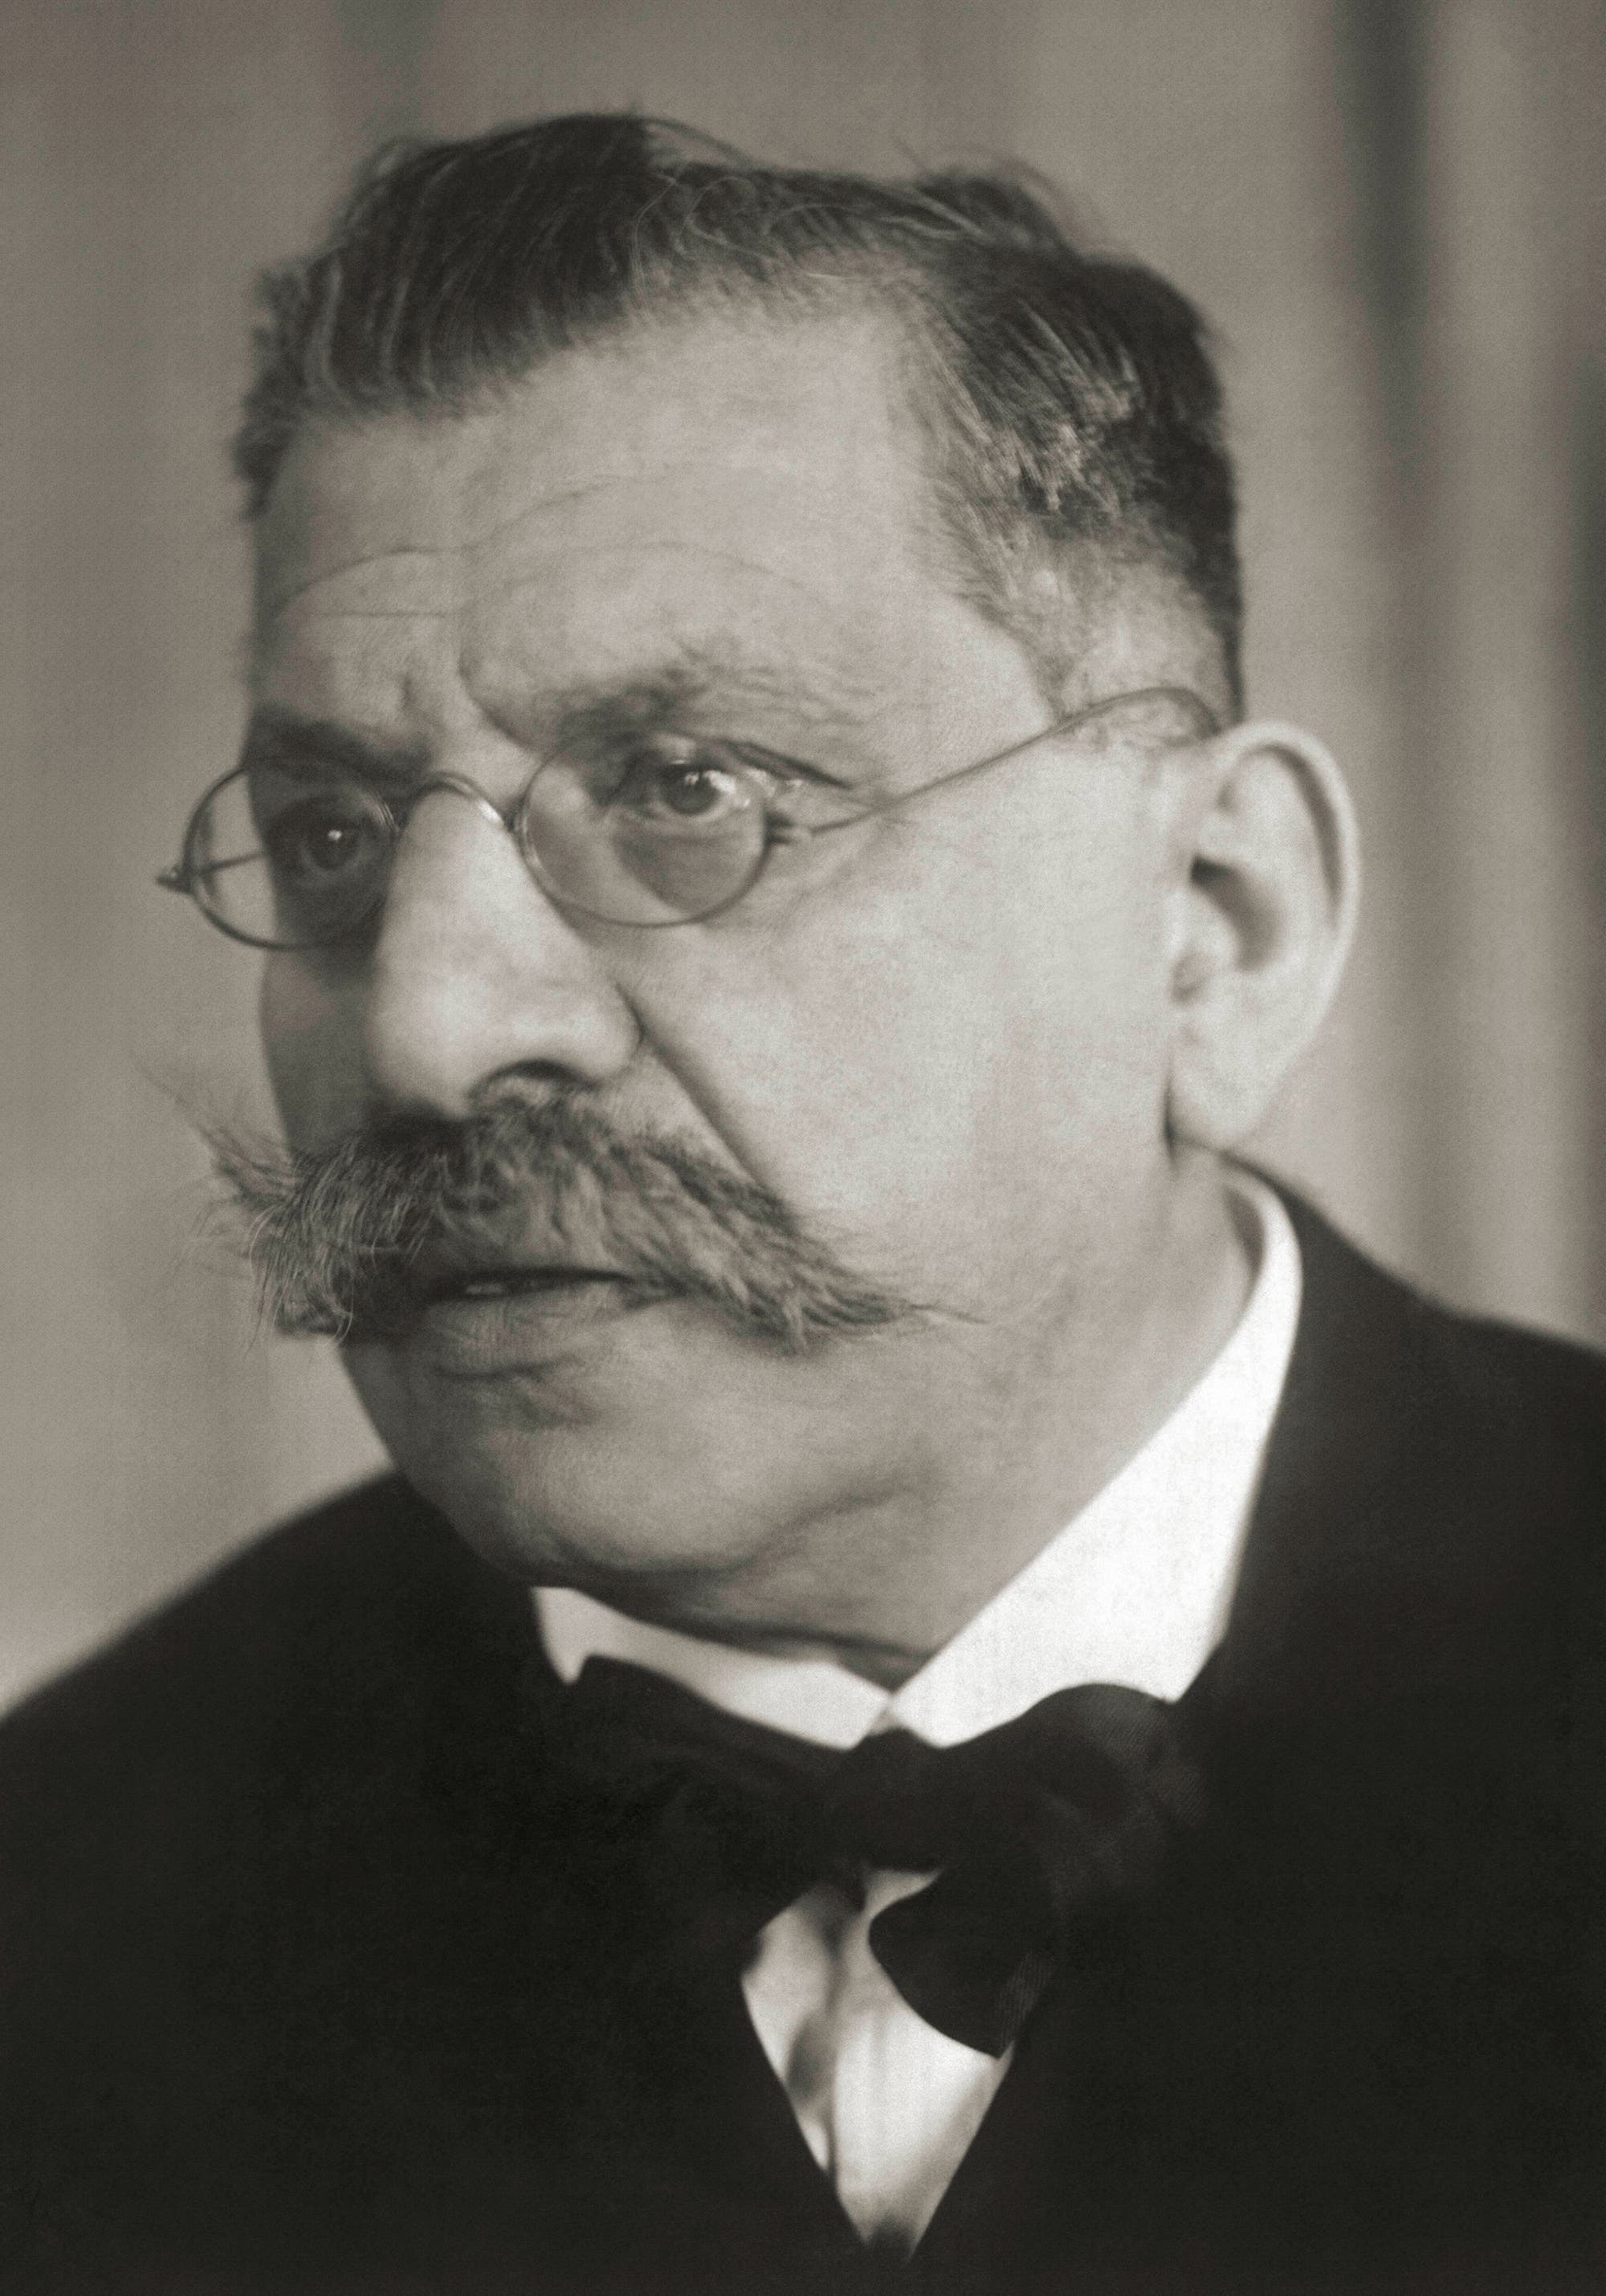 Porträtbild des Mediziners und Sexualforschers Magnus Hirschfeld